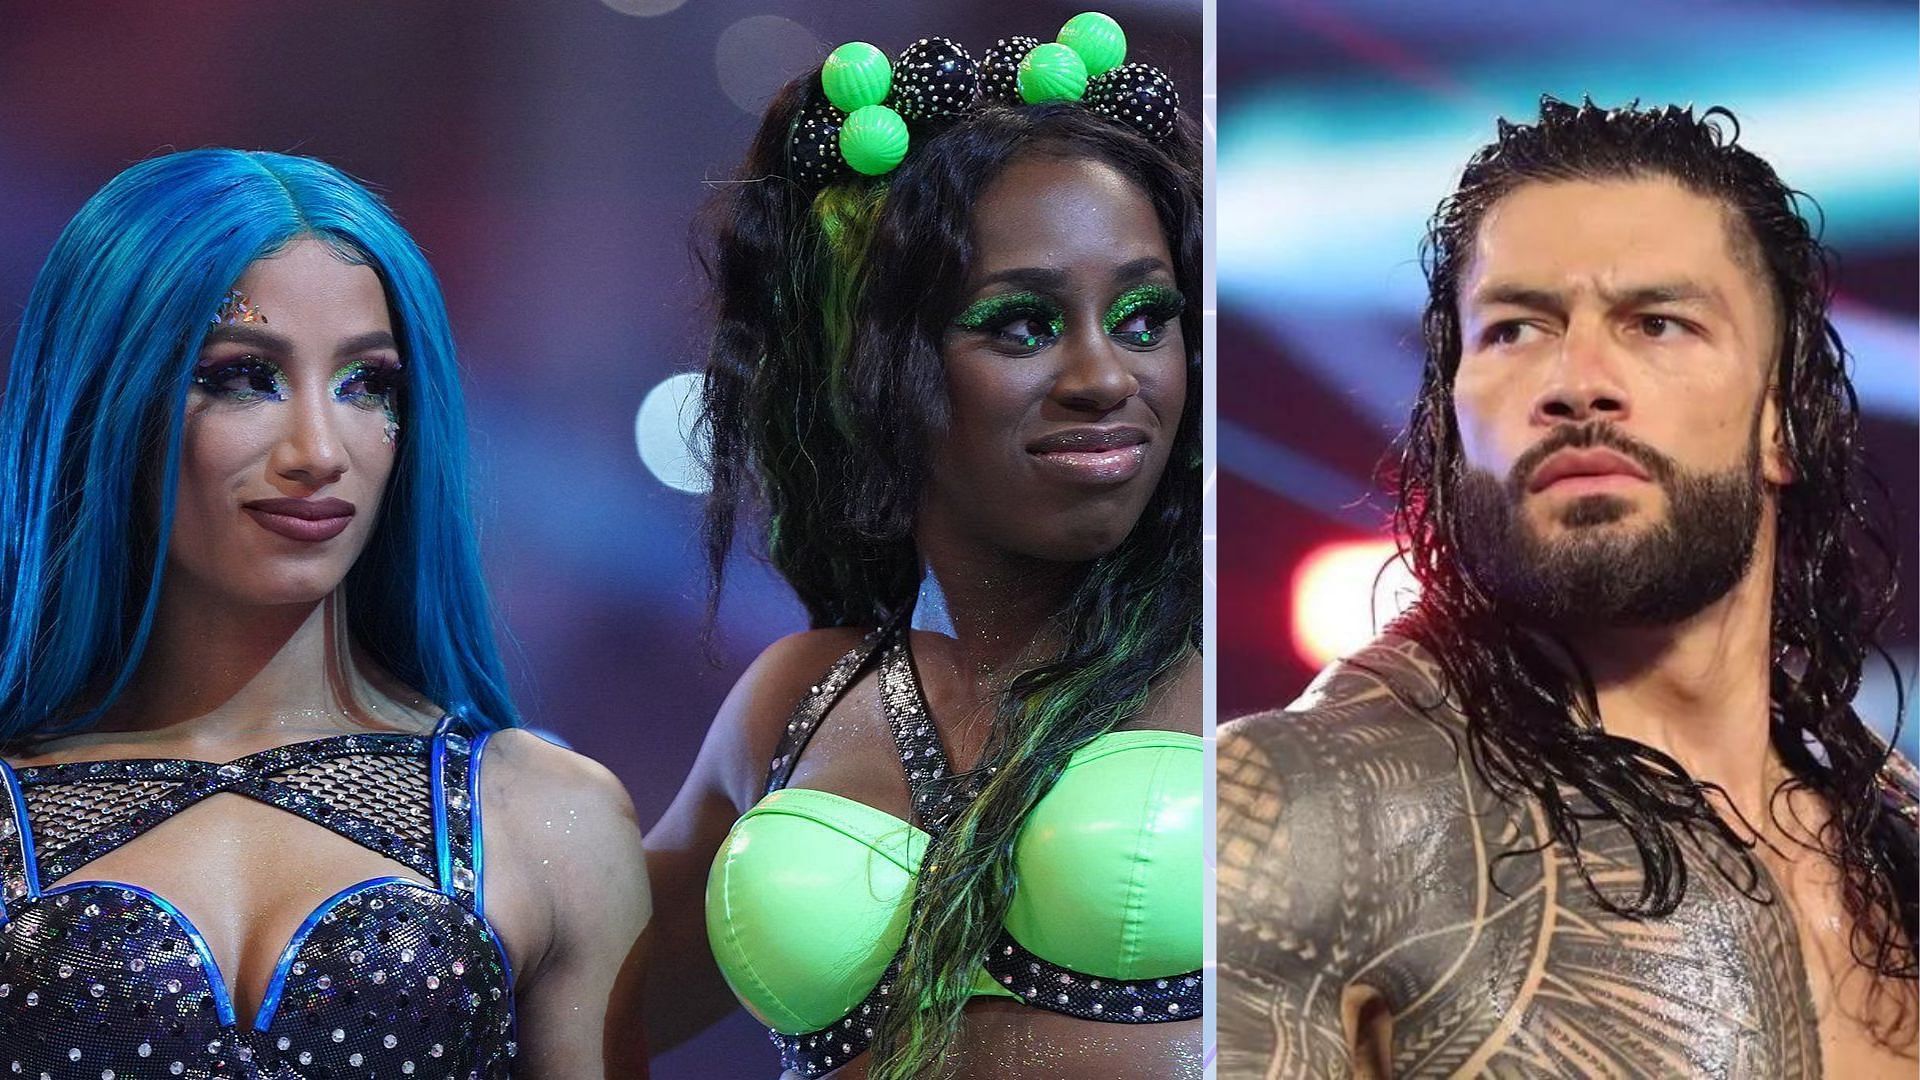 WWE Superstars Sasha Banks, Naomi, and Roman Reigns